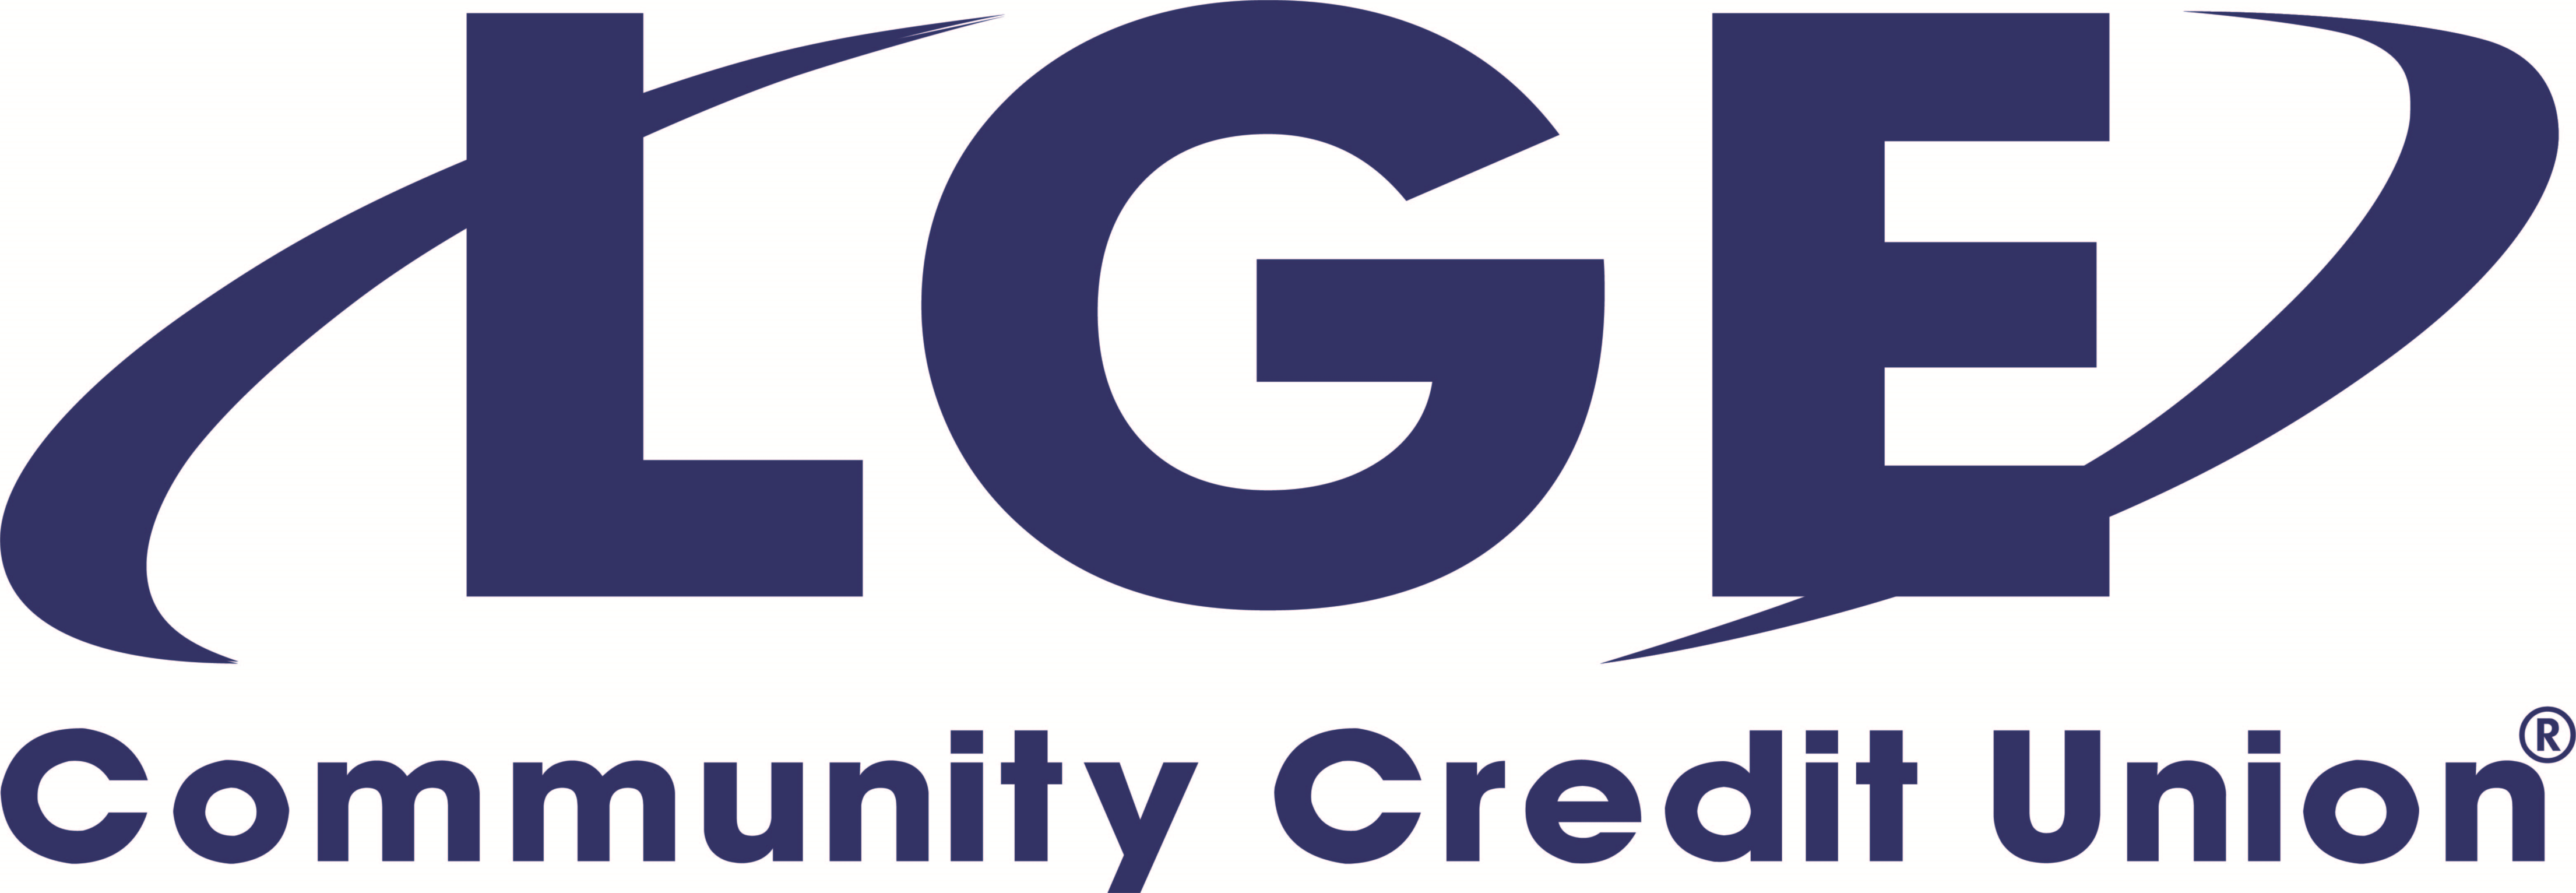 LGE Community Credit Union Company Logo